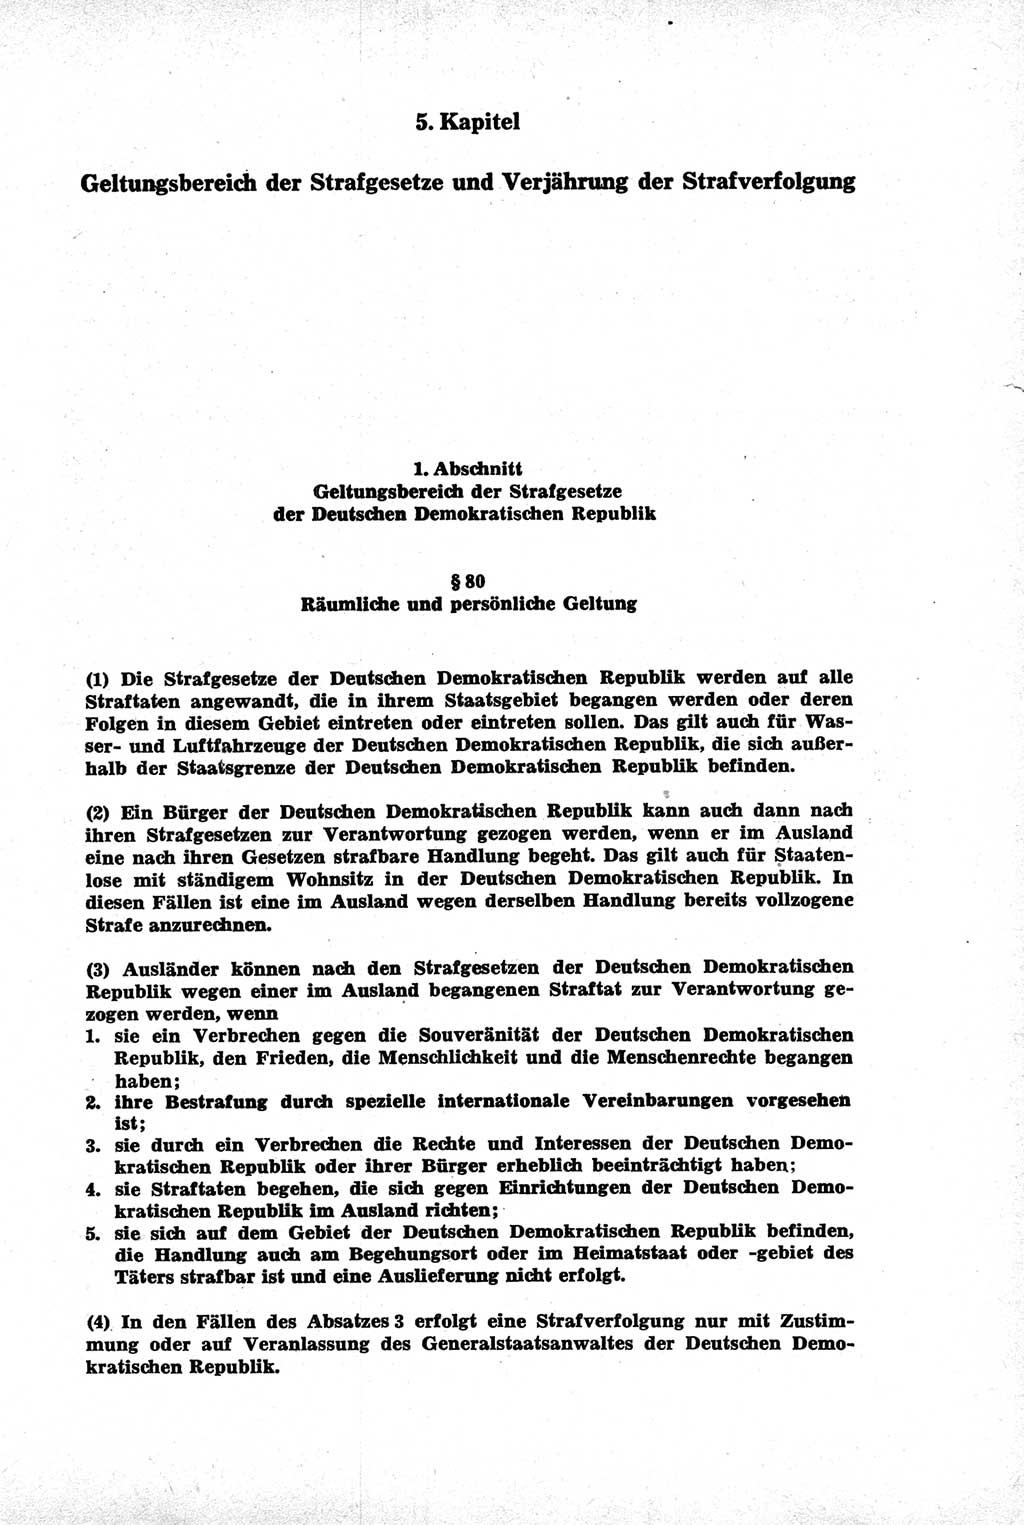 Strafrecht der Deutschen Demokratischen Republik (DDR), Kommentar zum Strafgesetzbuch (StGB) 1981, Seite 249 (Strafr. DDR Komm. StGB 1981, S. 249)